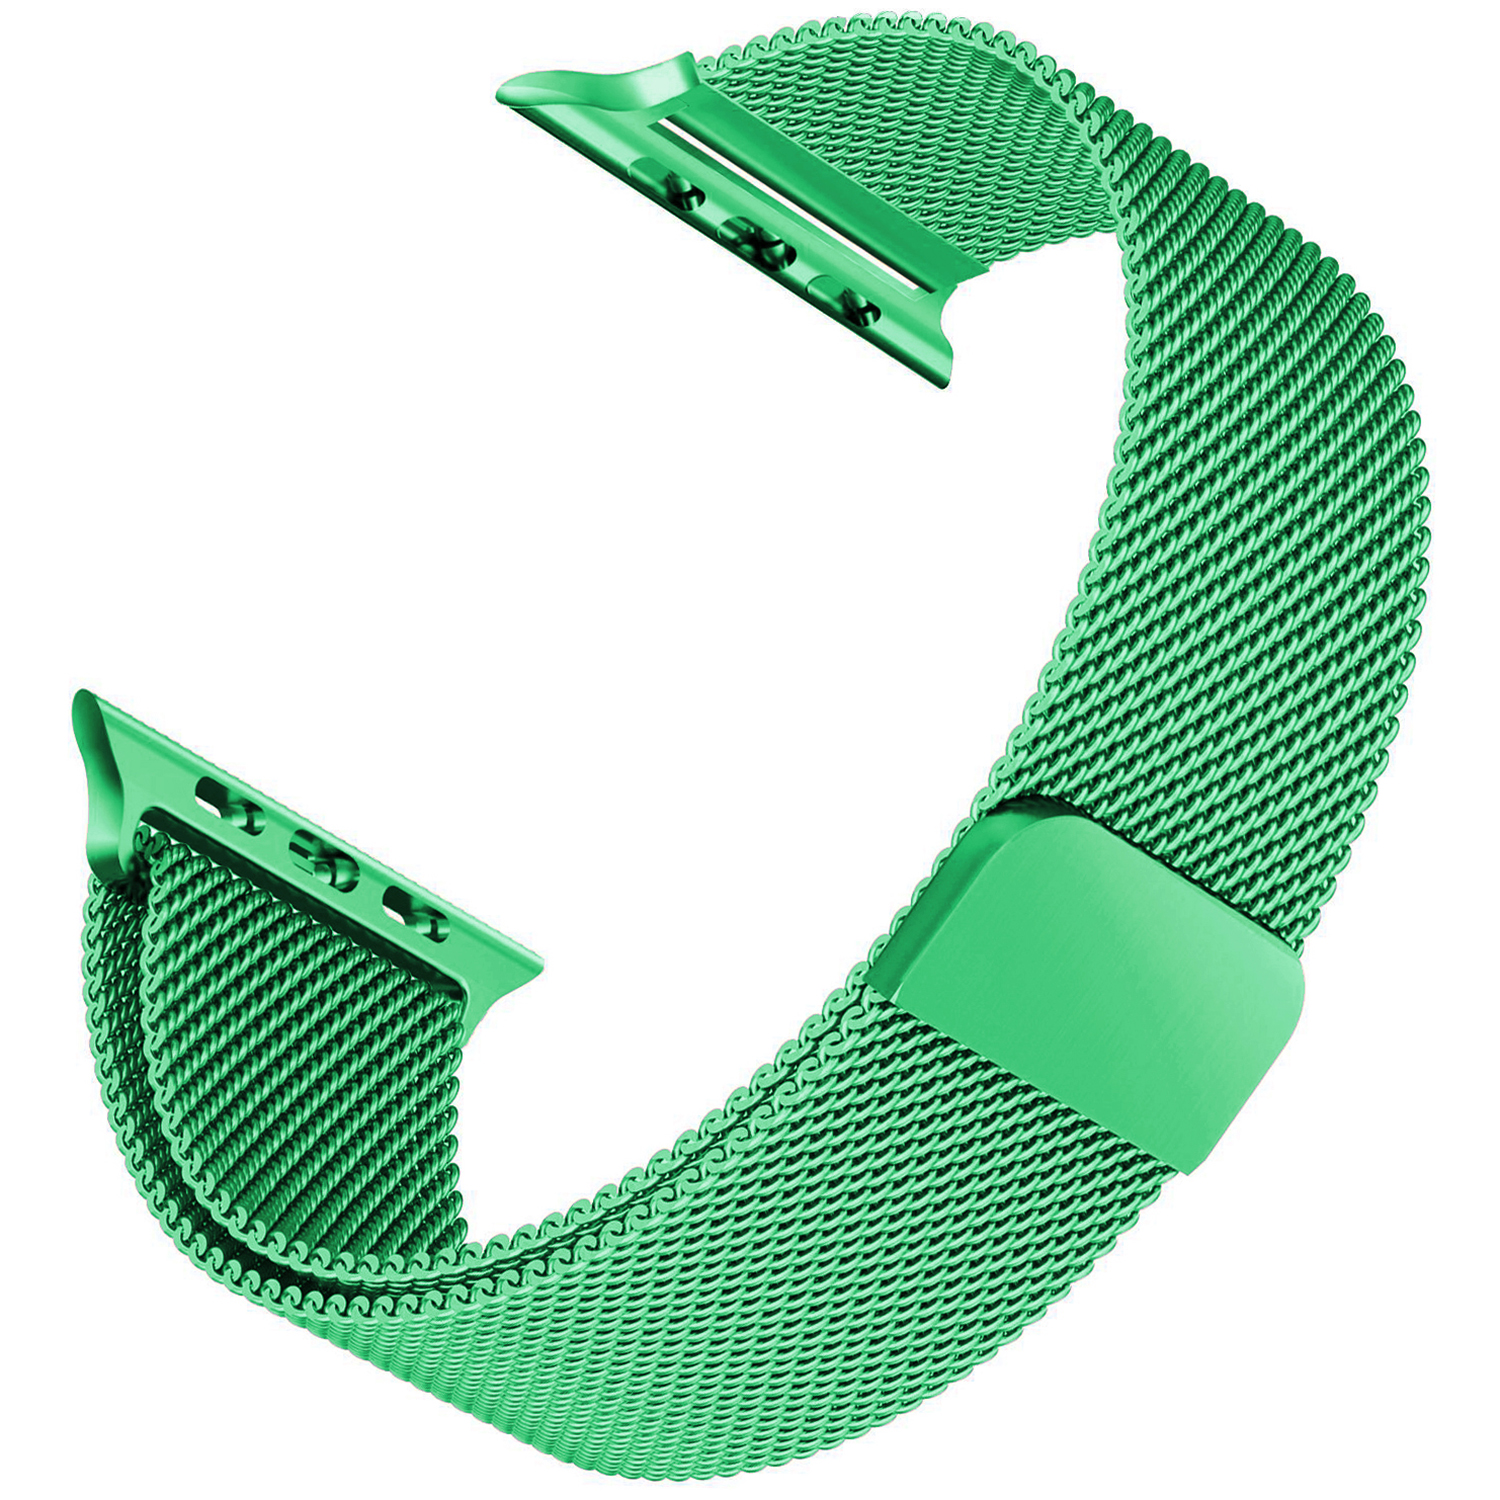 Microsonic Apple Watch 3 42mm Kordon Luxe Metal Twist Yeşil